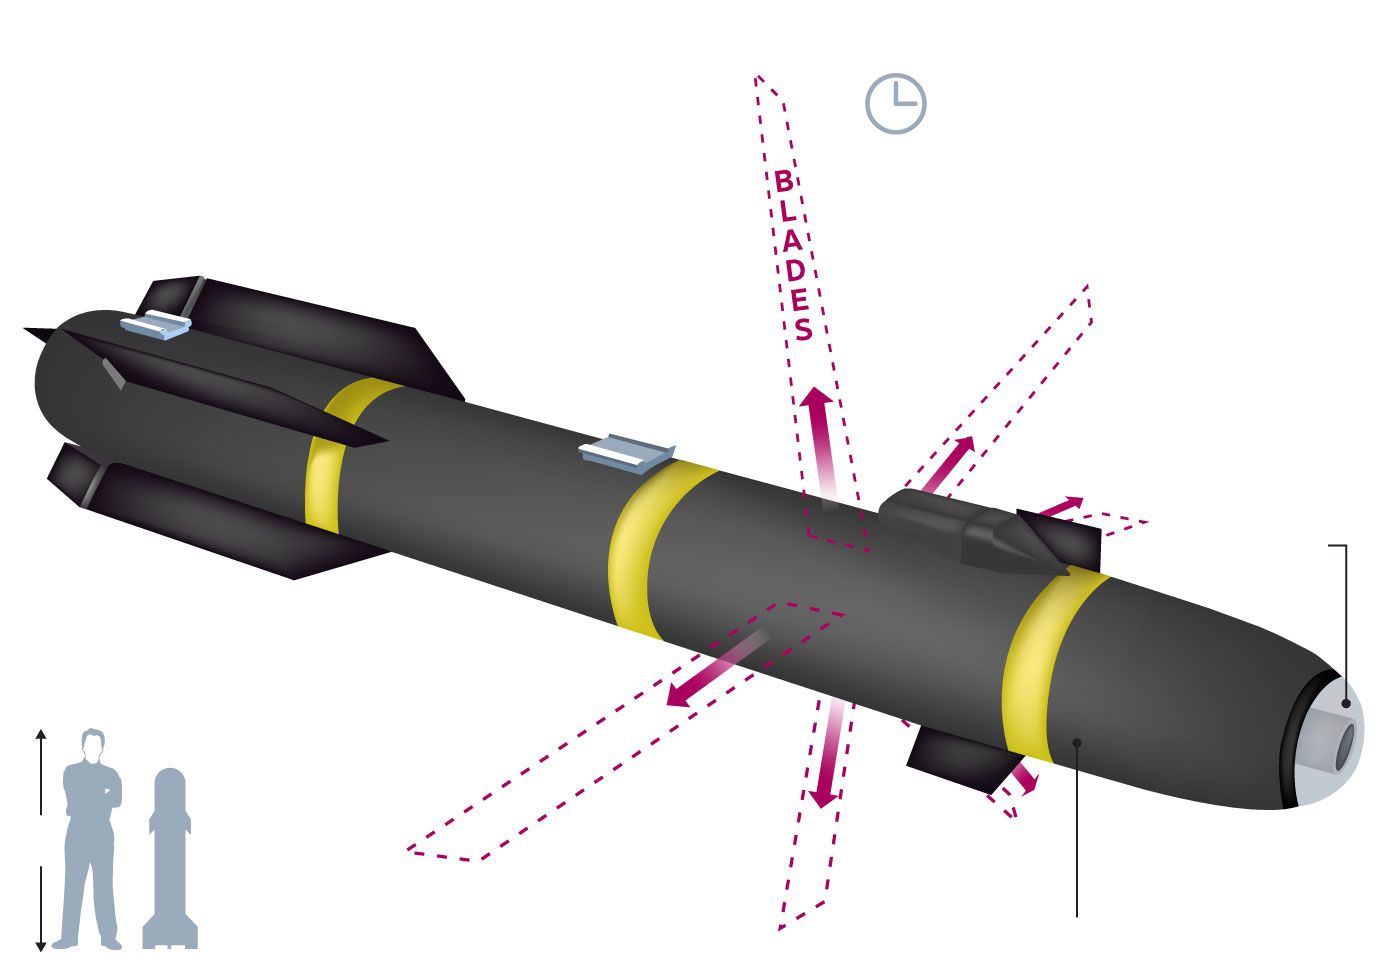 Tìm hiểu tên lửa tấn công Hellfire R9X đặc biệt không dùng thuốc nổ của Mỹ nhưng vẫn có thể tiêu diệt mục tiêu